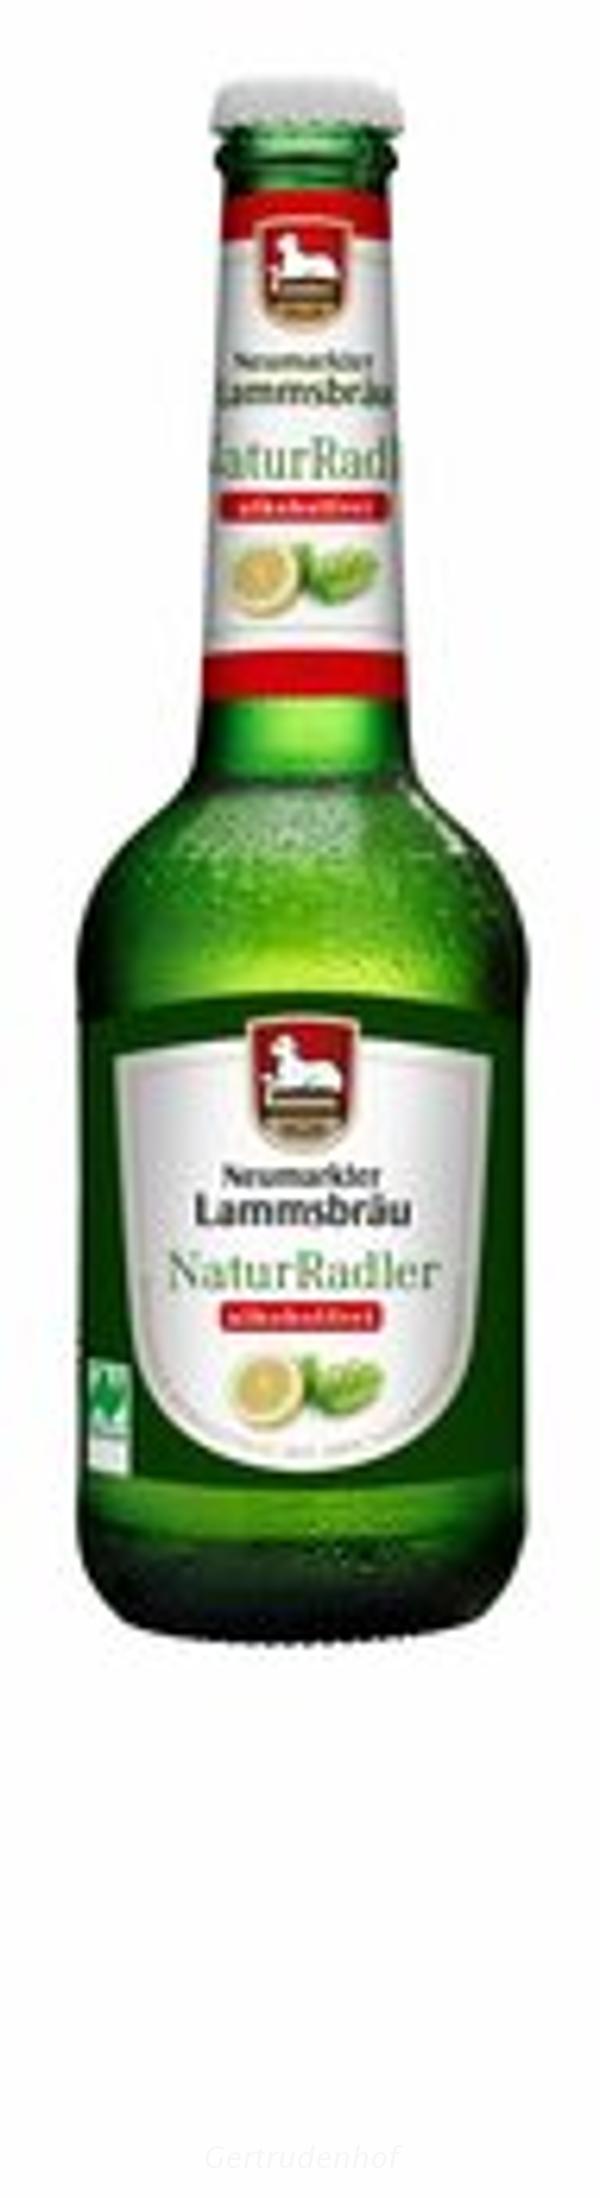 Produktfoto zu Lammsbräu alk.frei Nat. Radler